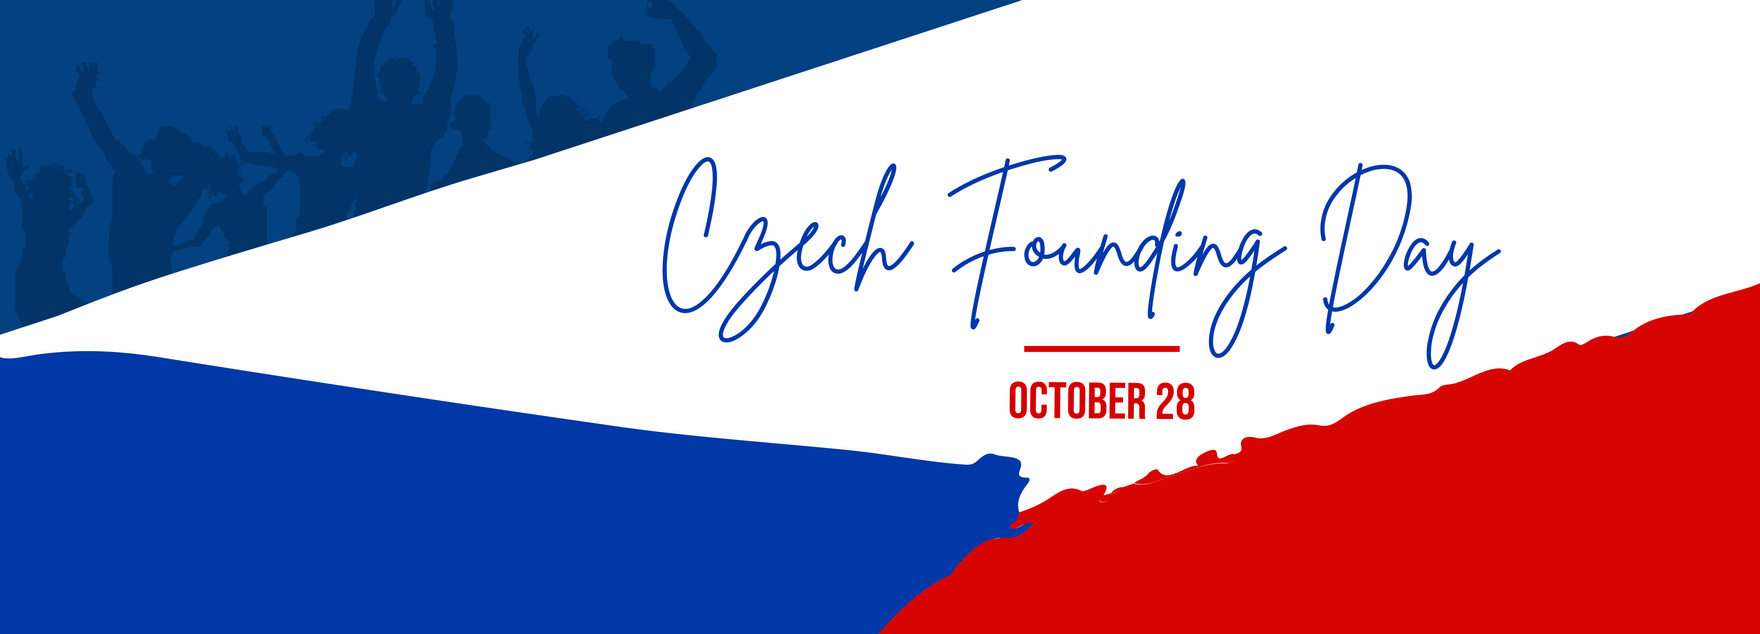 Czech Founding Day Banner in Illustrator, PSD, EPS, SVG, JPG, PNG